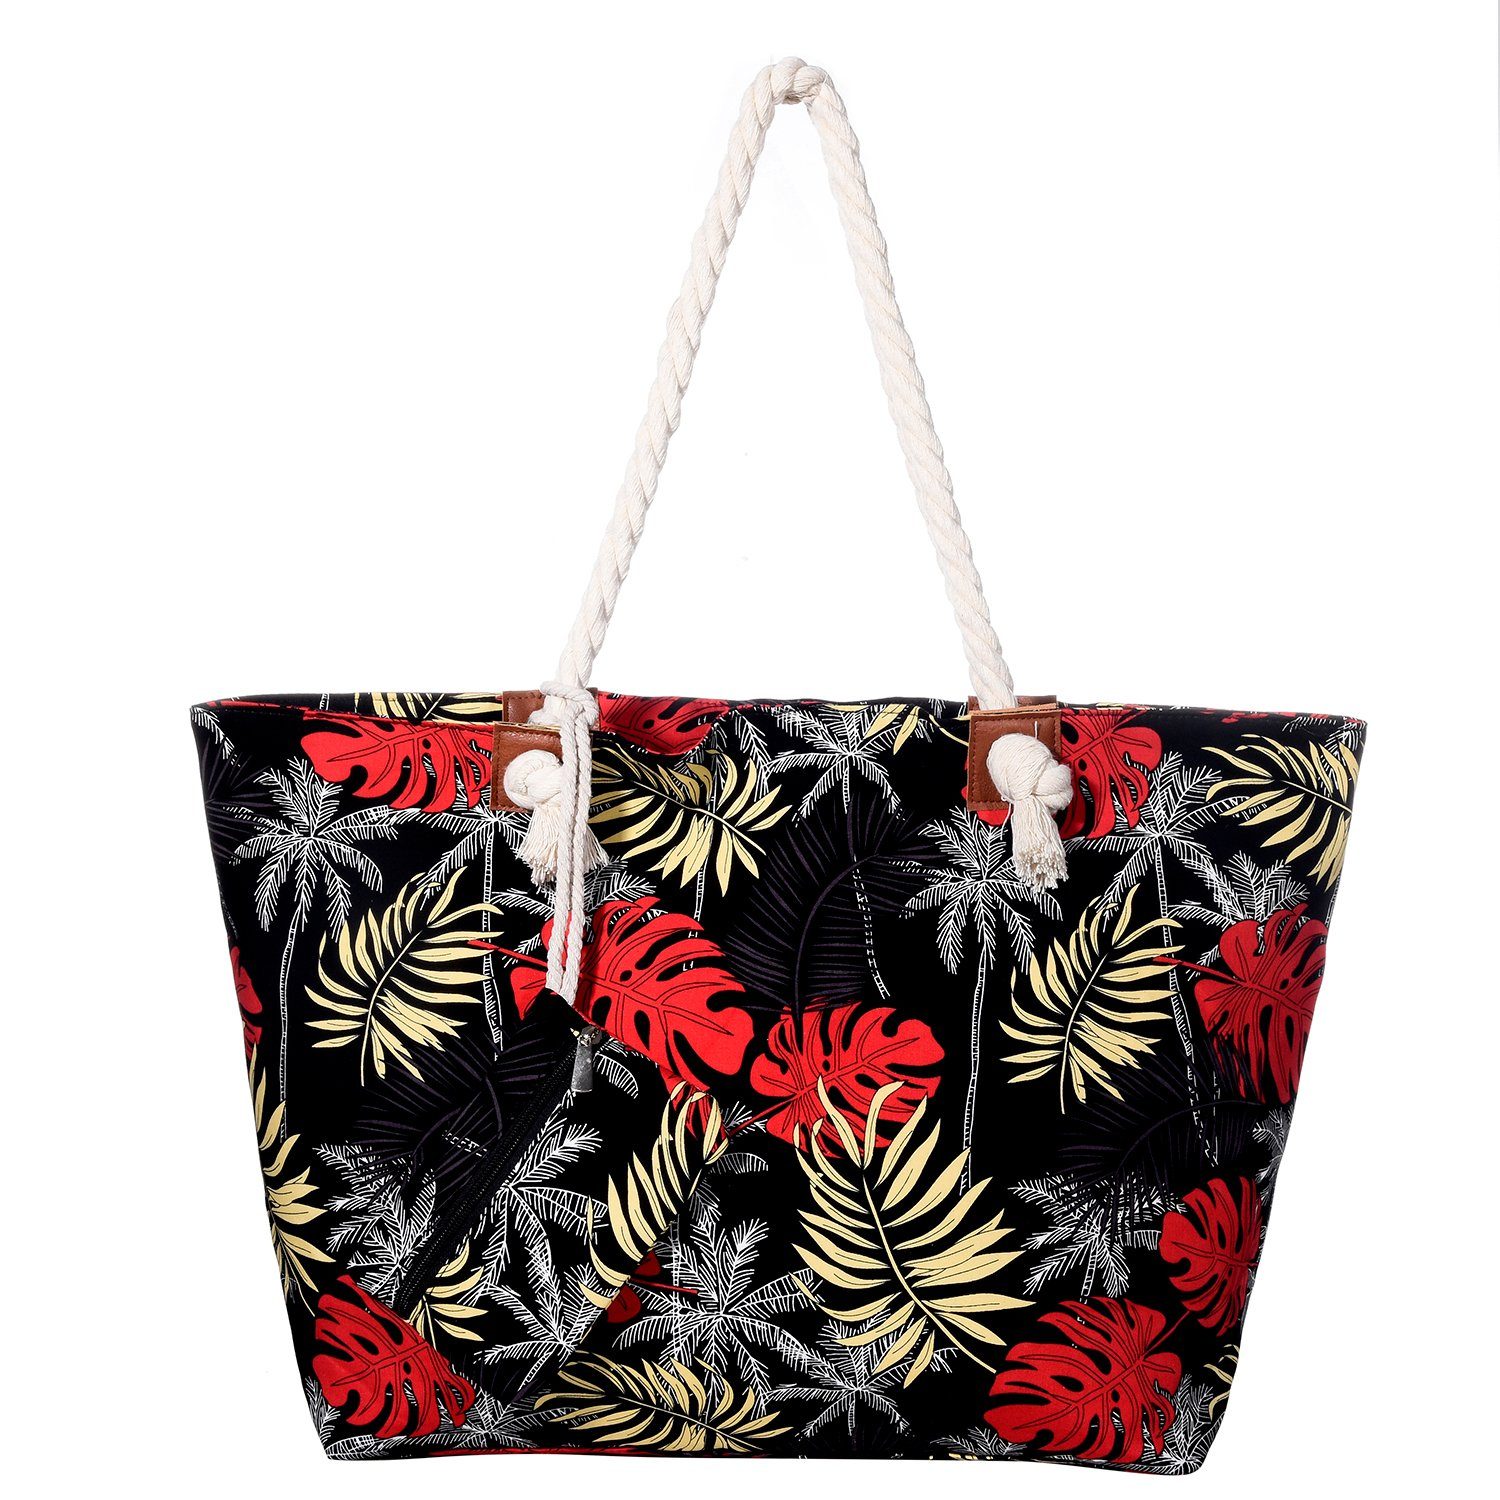 DonDon Strandtasche »Shopper wasserabweisende Tasche« (2-tlg), Große  Strandtasche, mit Reißverschluss, inkl. kleinem Beutel online kaufen | OTTO